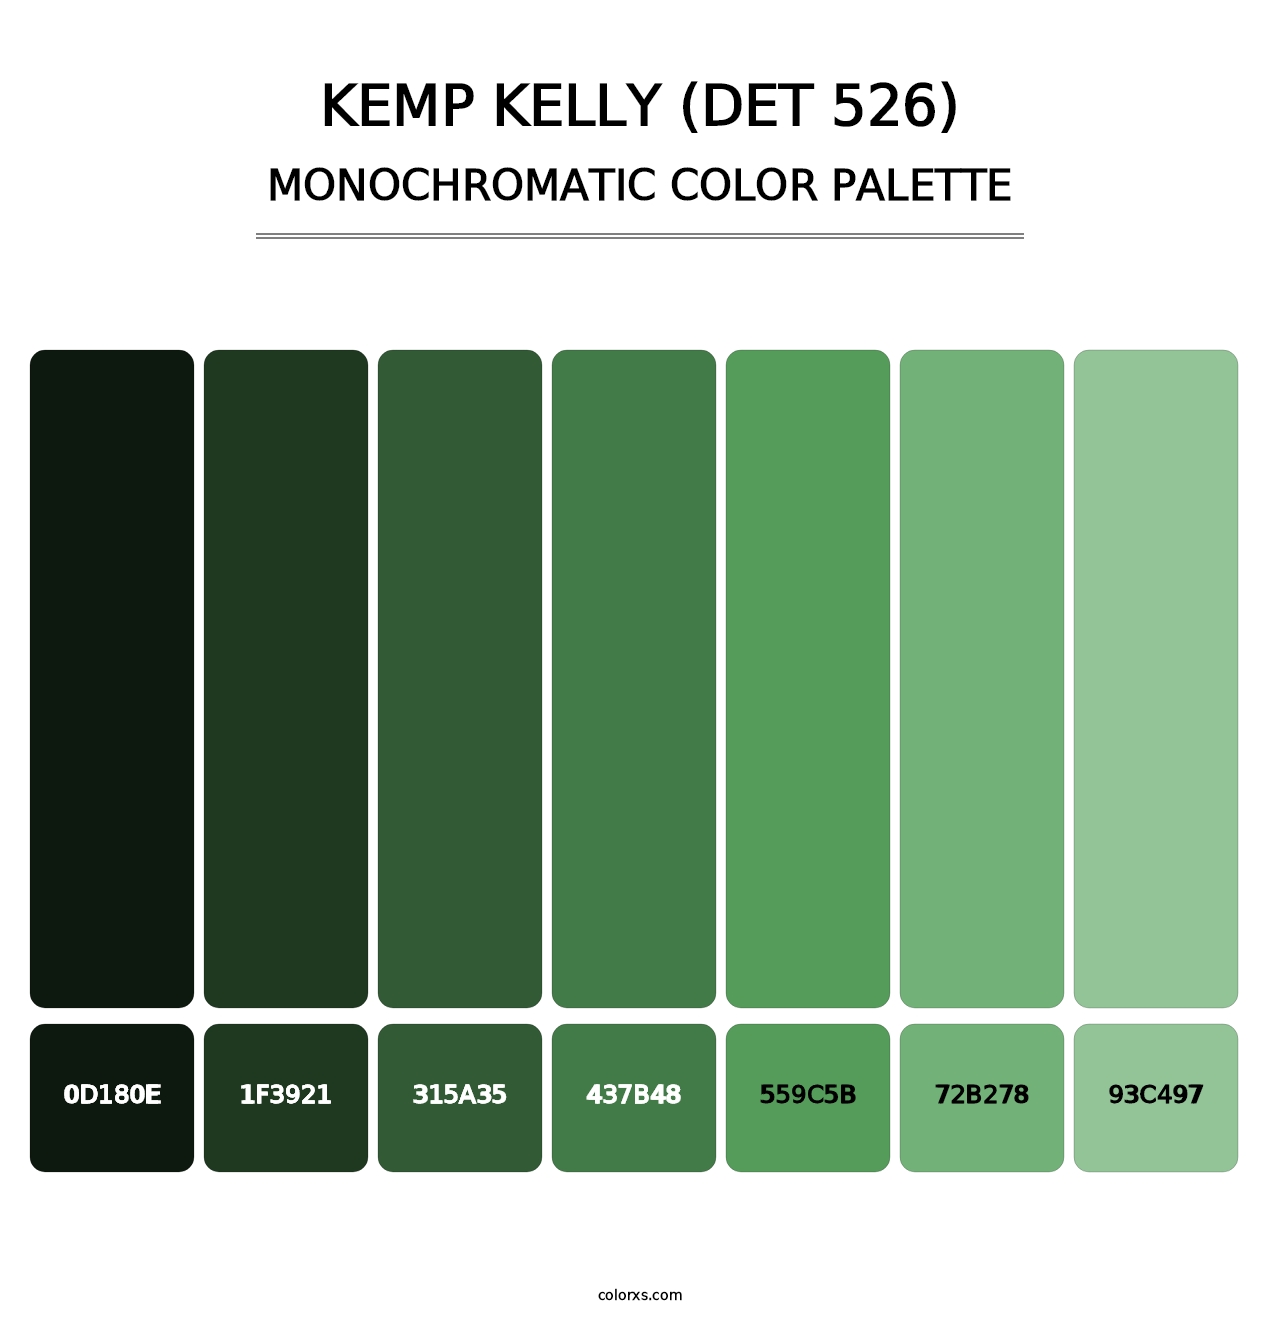 Kemp Kelly (DET 526) - Monochromatic Color Palette